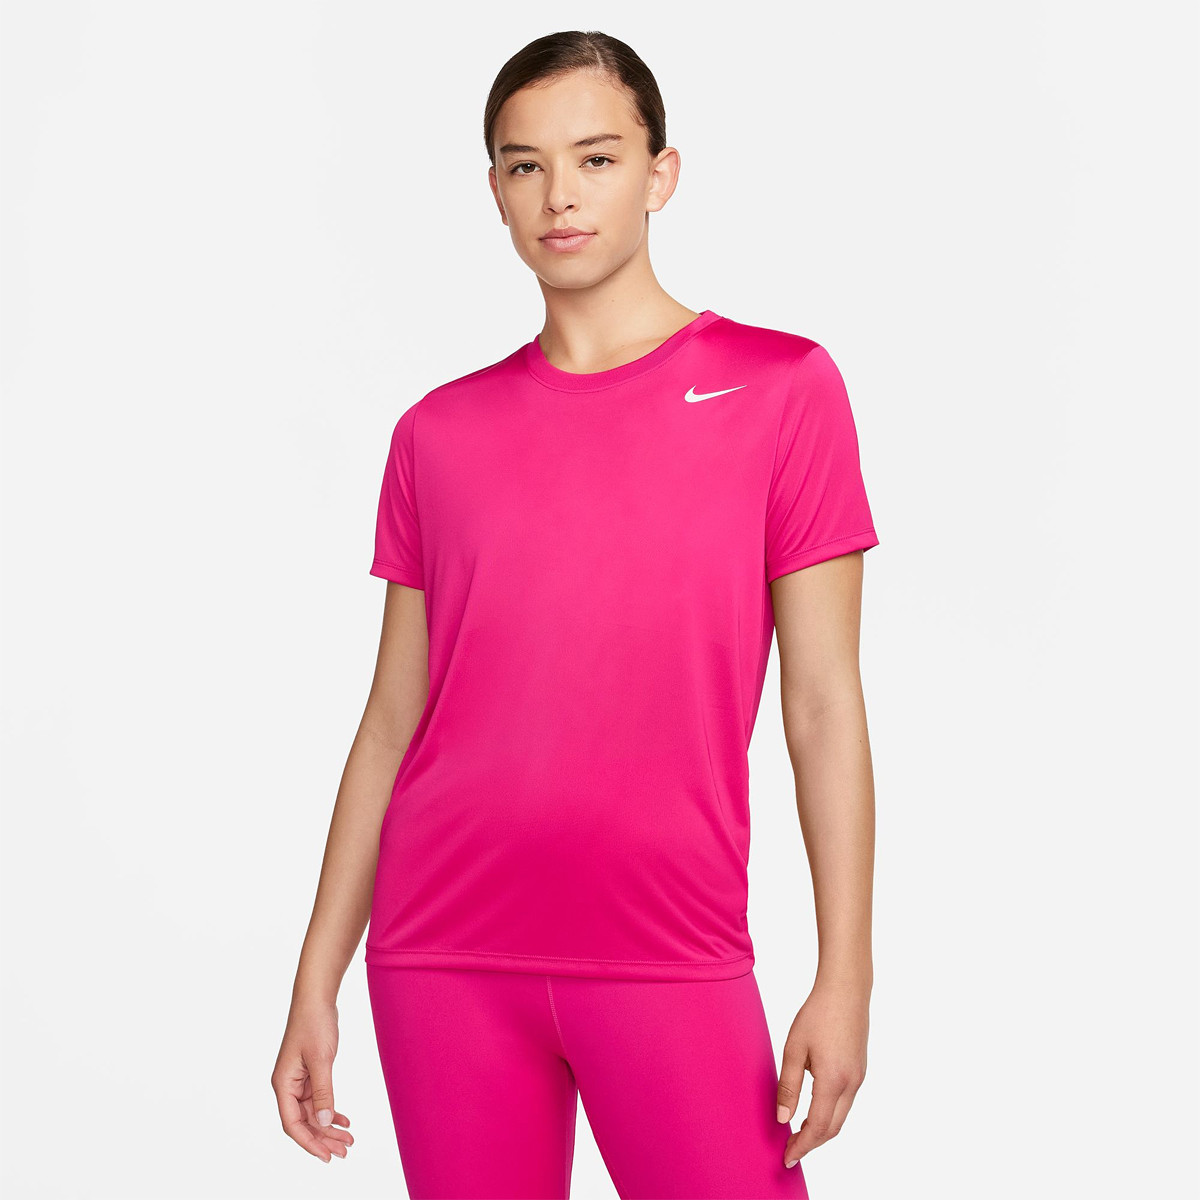 Bandeau large imprimé femme Nike GRAPHIC - Nike - Marques - Textile